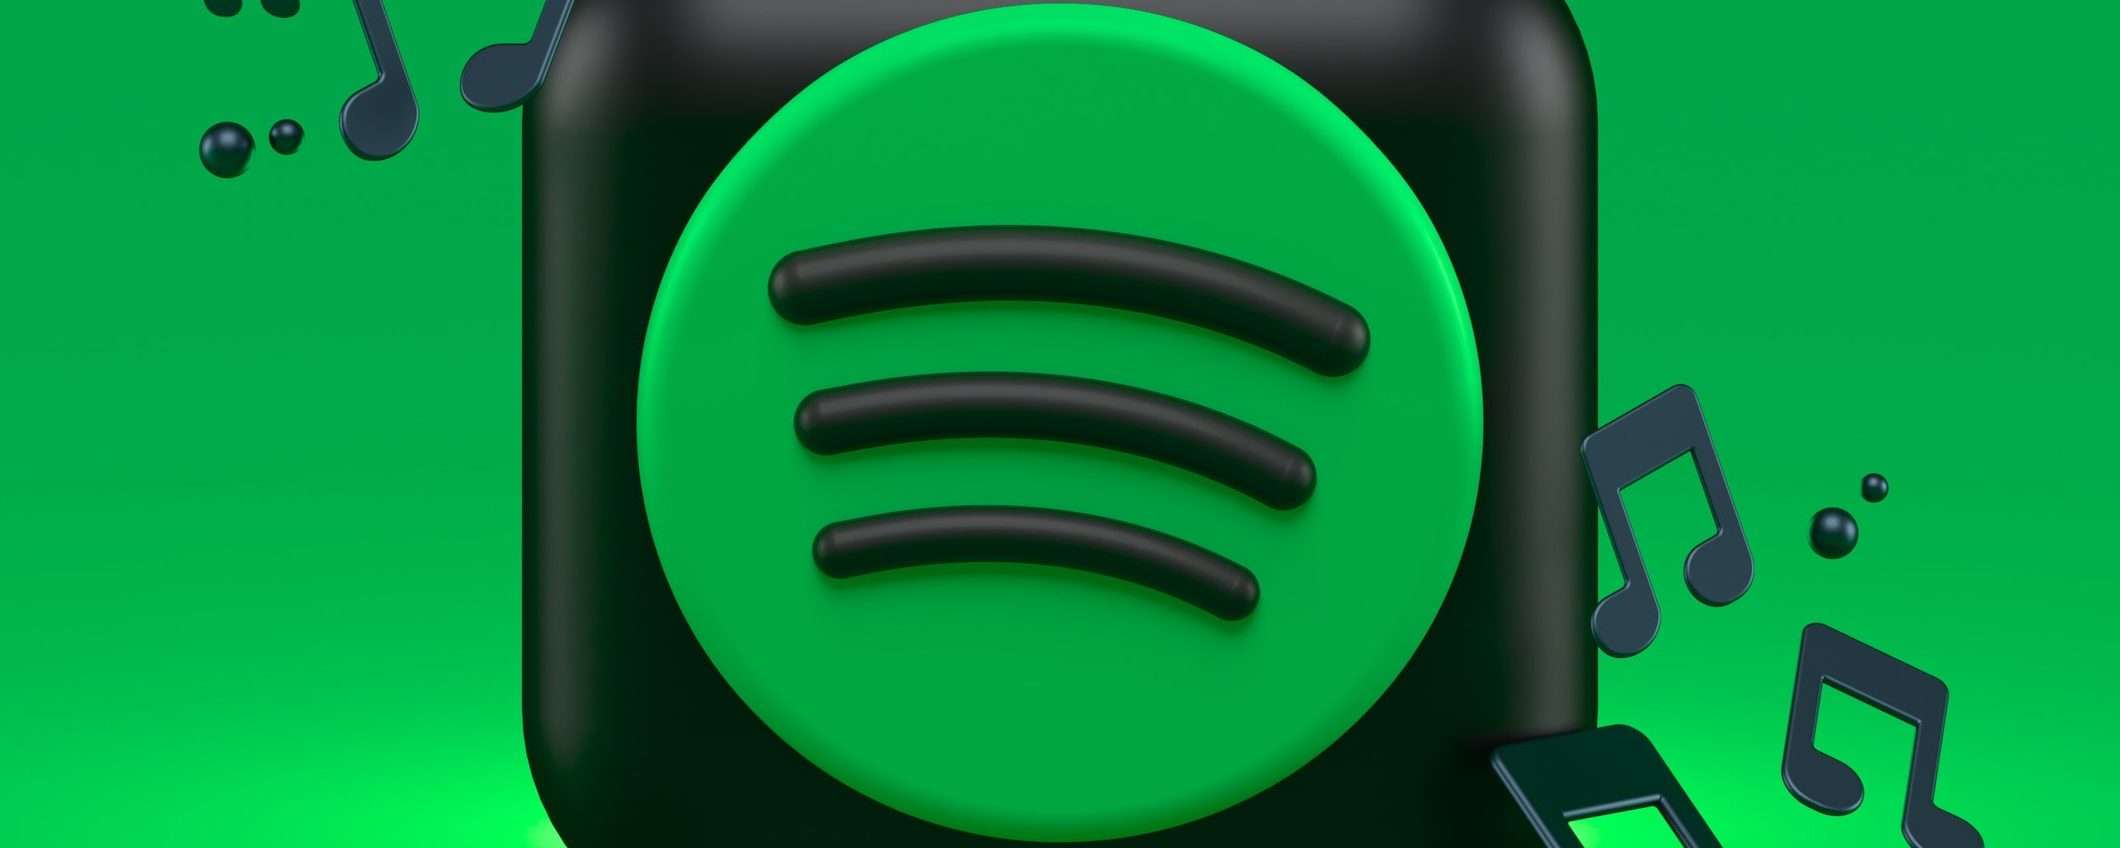 Spotify si prepara a integrare le stanze audio